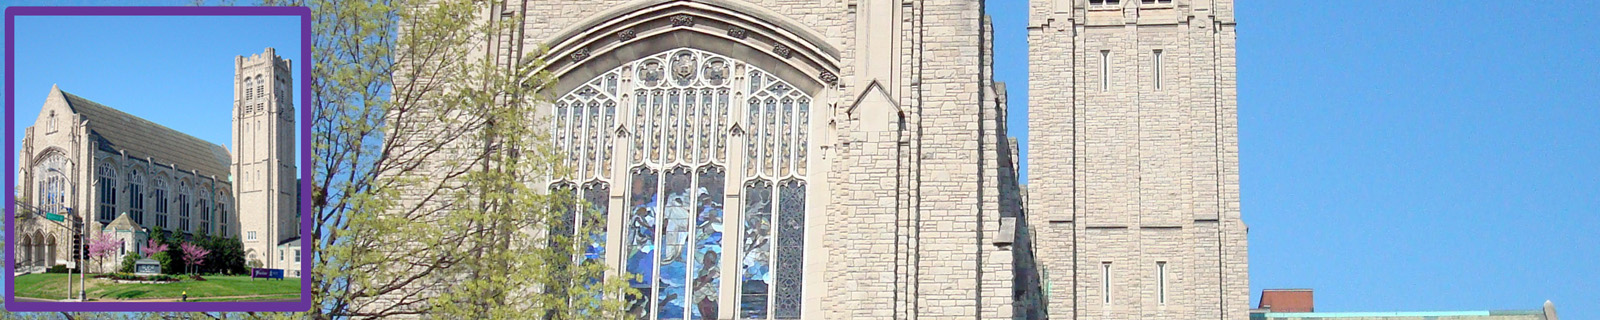 Church Front Facade